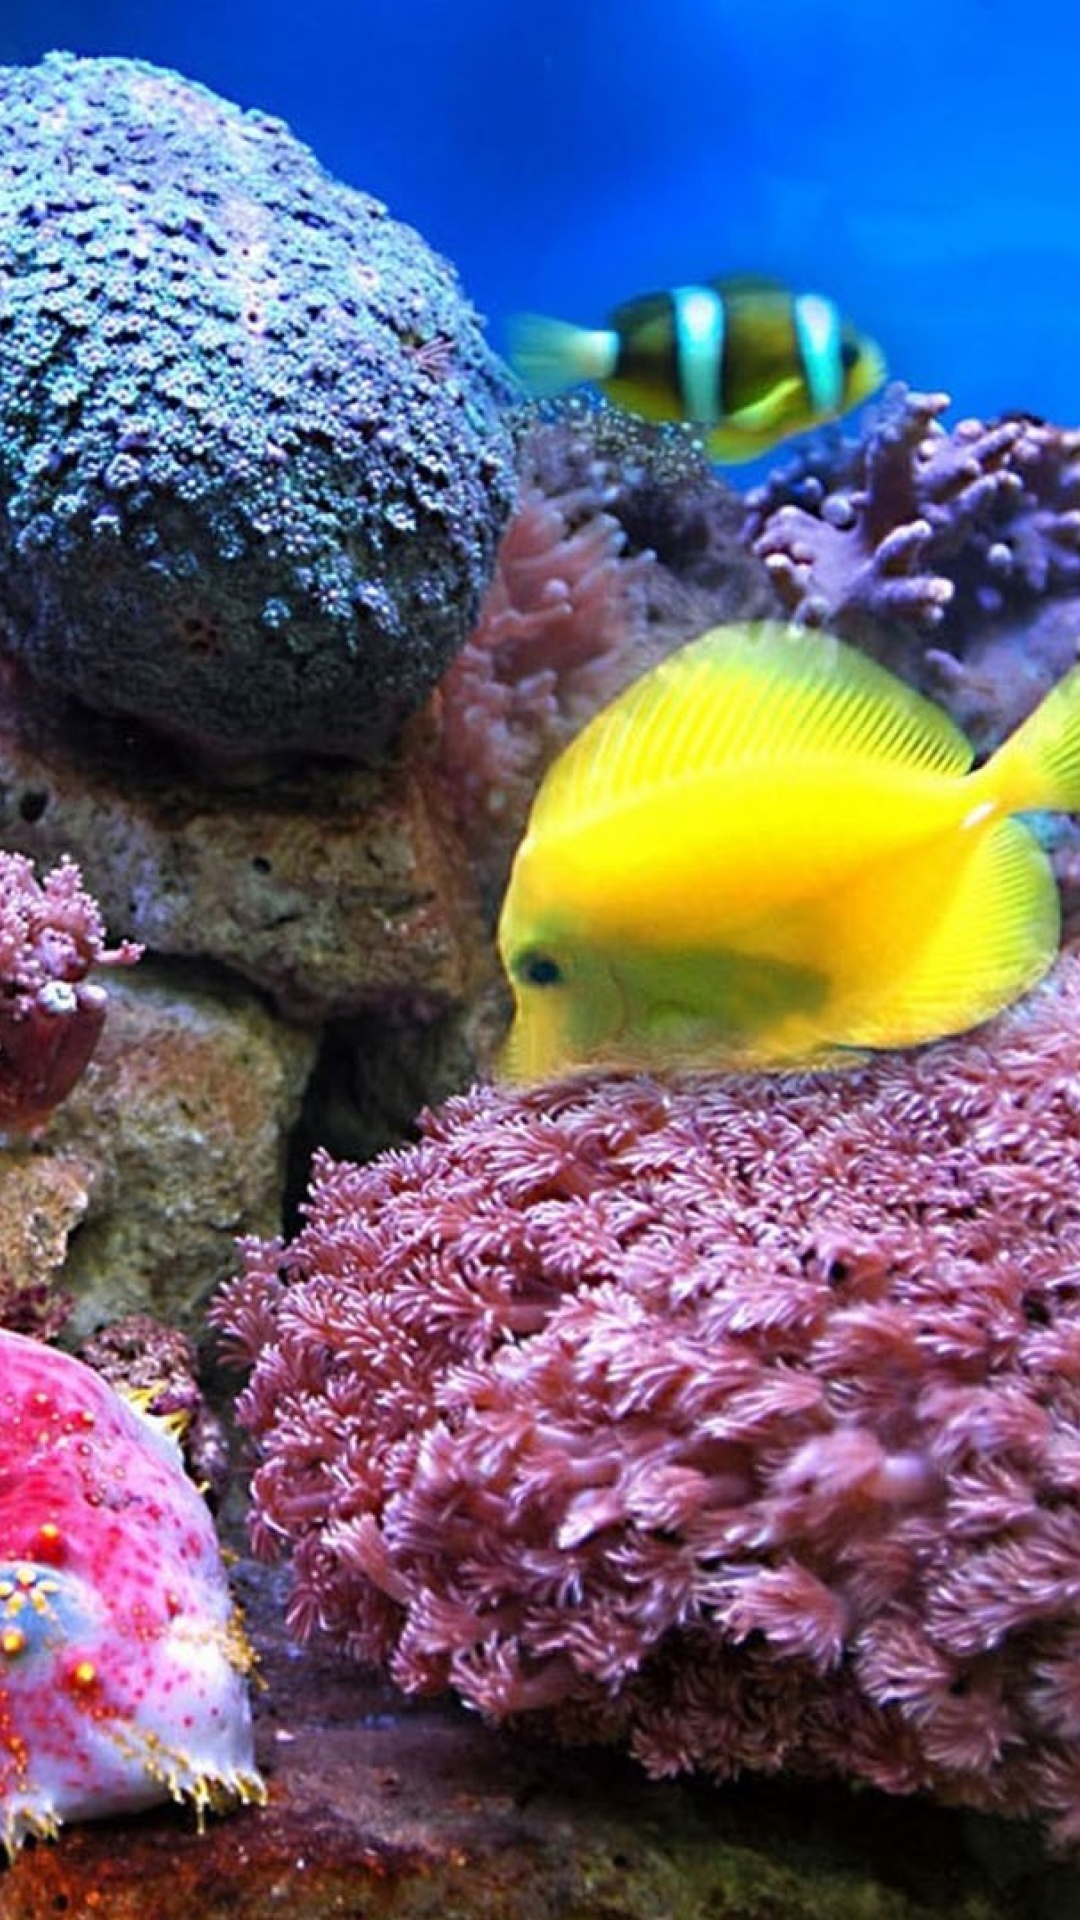 Das Colorful marine fishes in aquarium Wallpaper 1080x1920